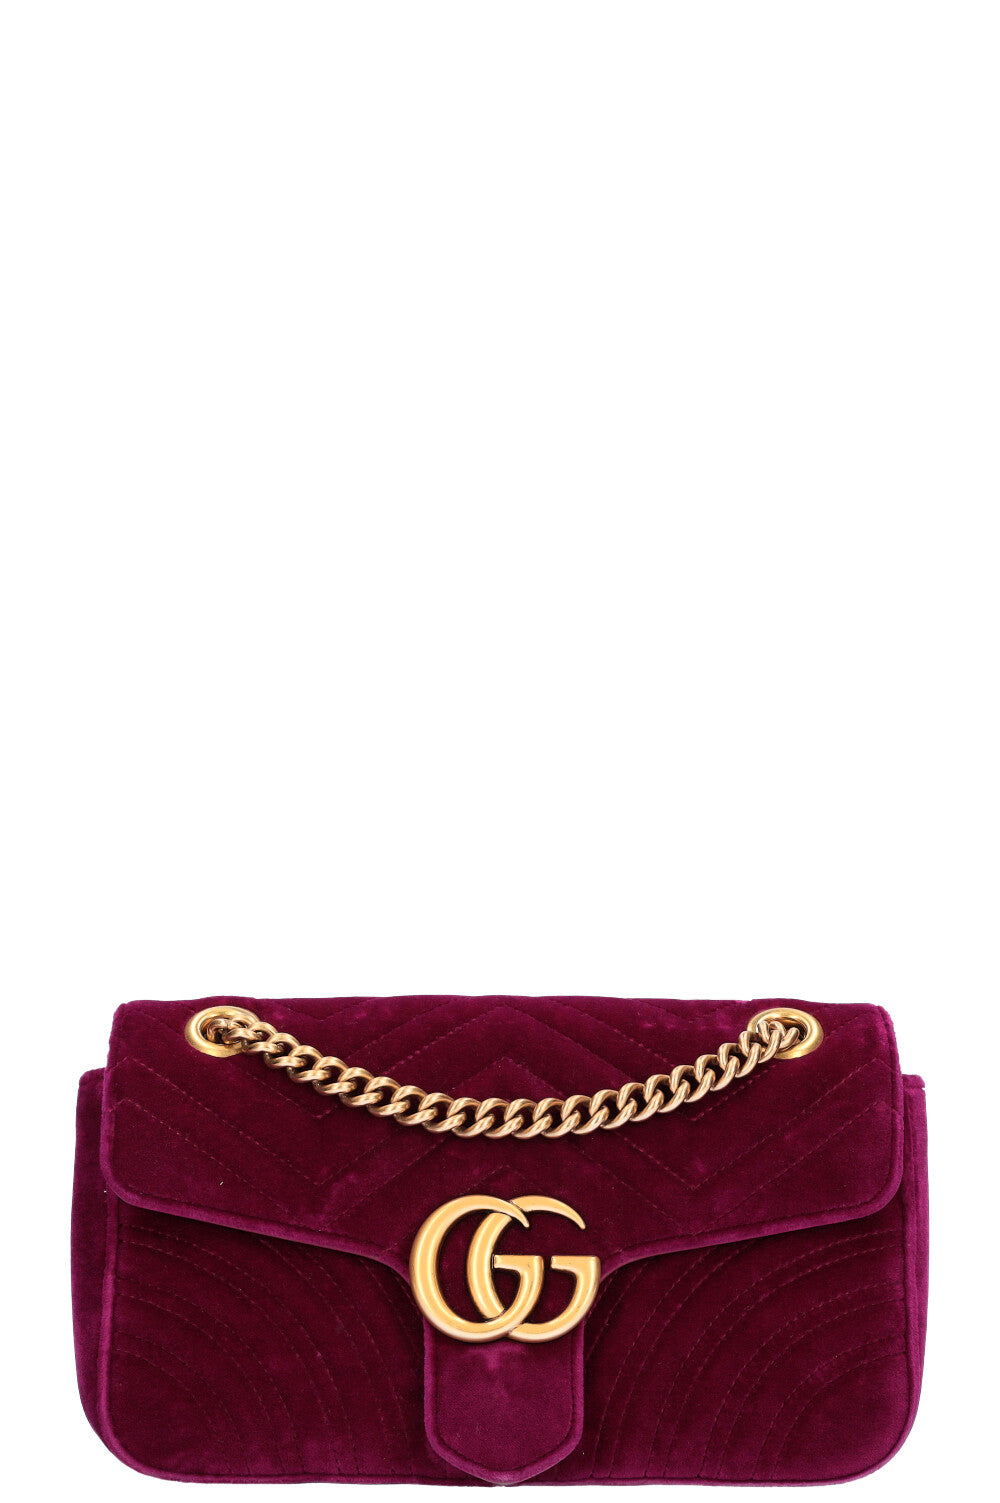 Gucci Marmont Bag Fuchsia